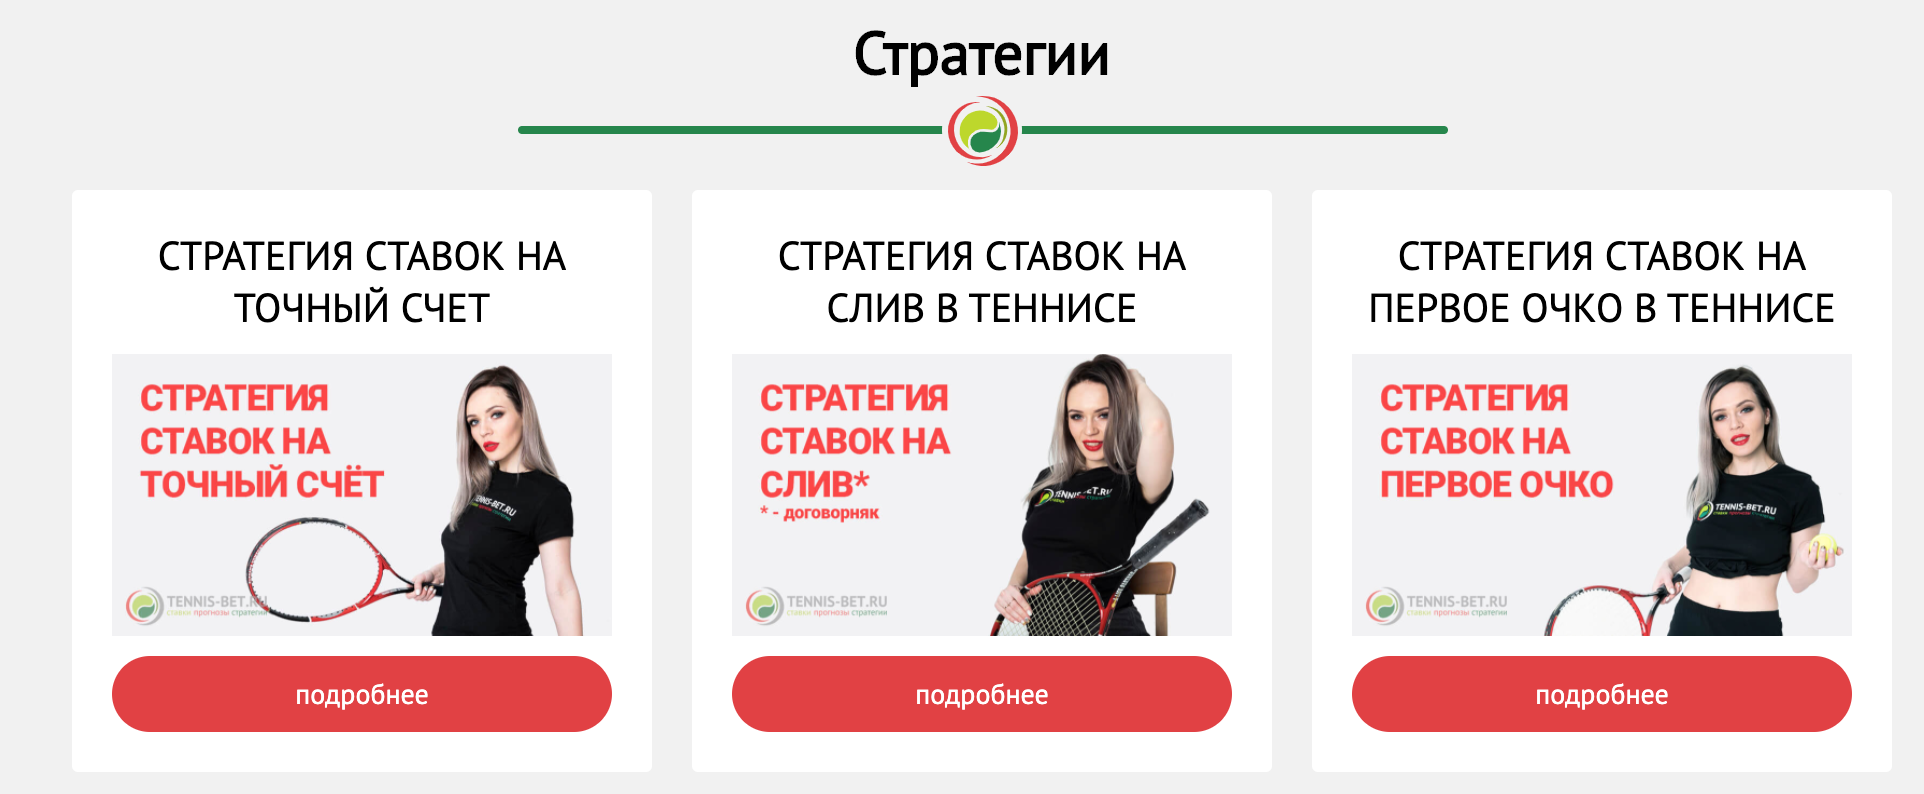 Стратегии Tennis-bet.ru